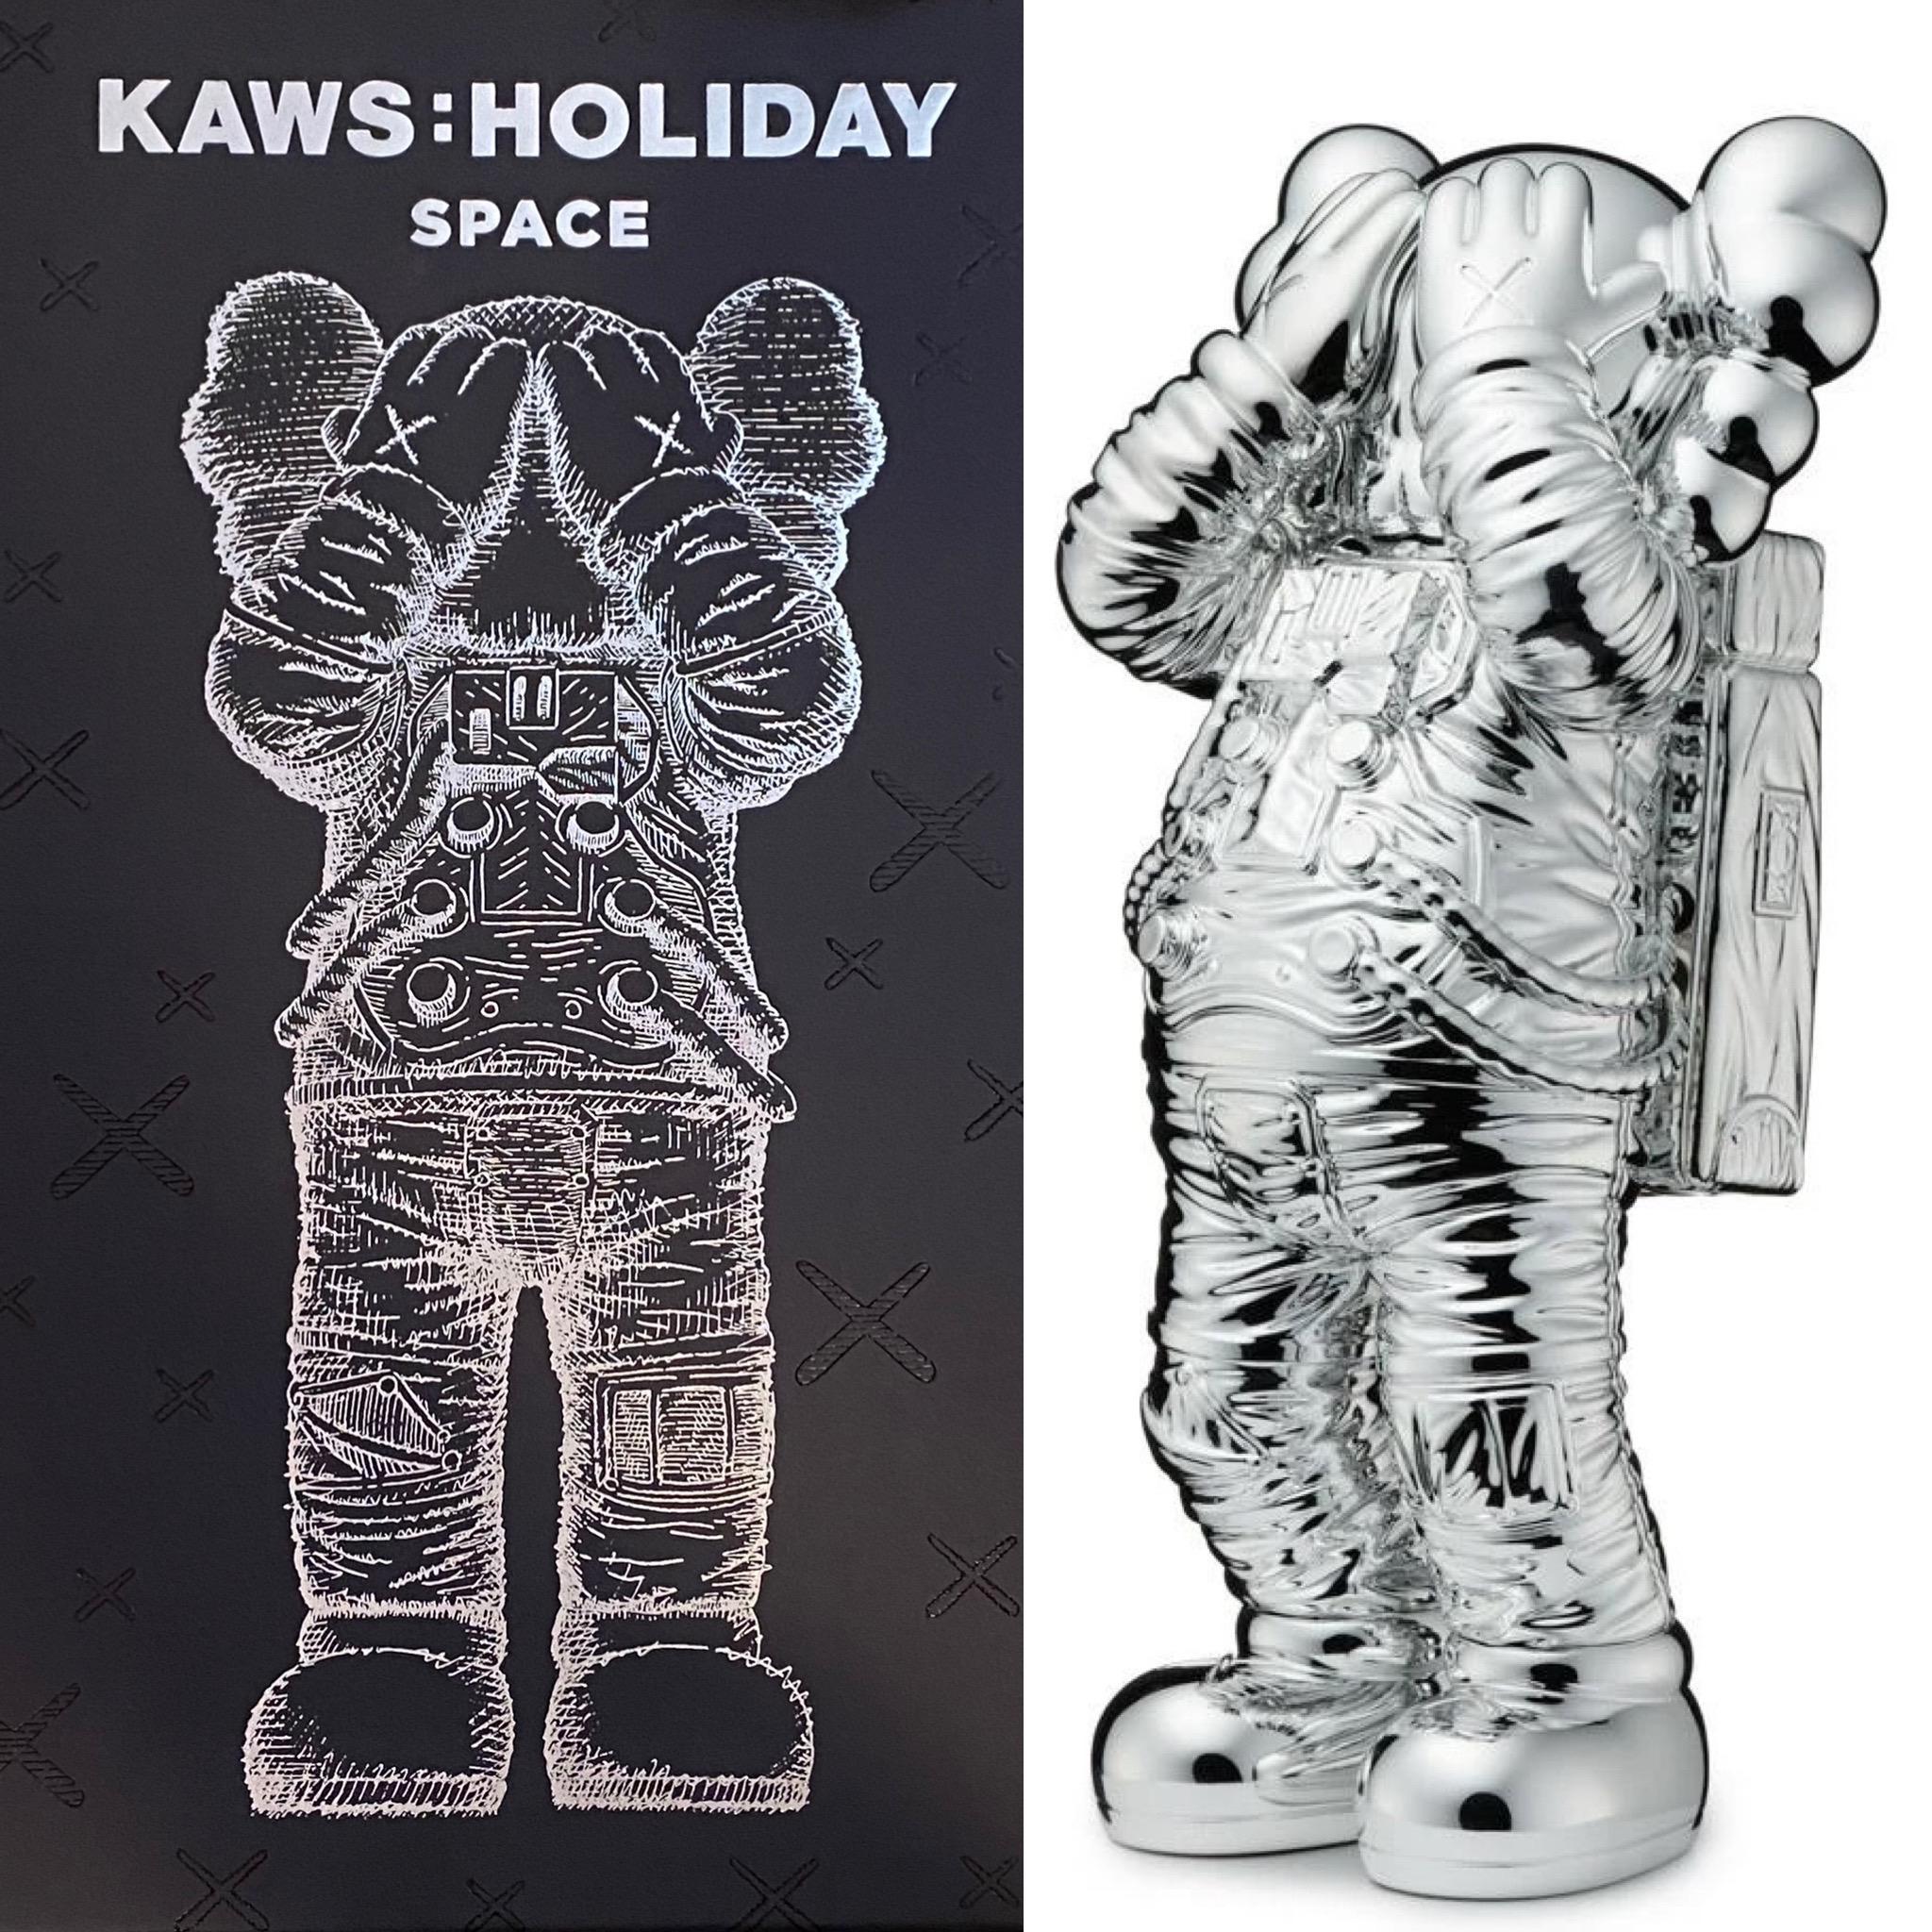 KAWS - KAWS Holiday SPACE Companion (KAWS silver holiday space)